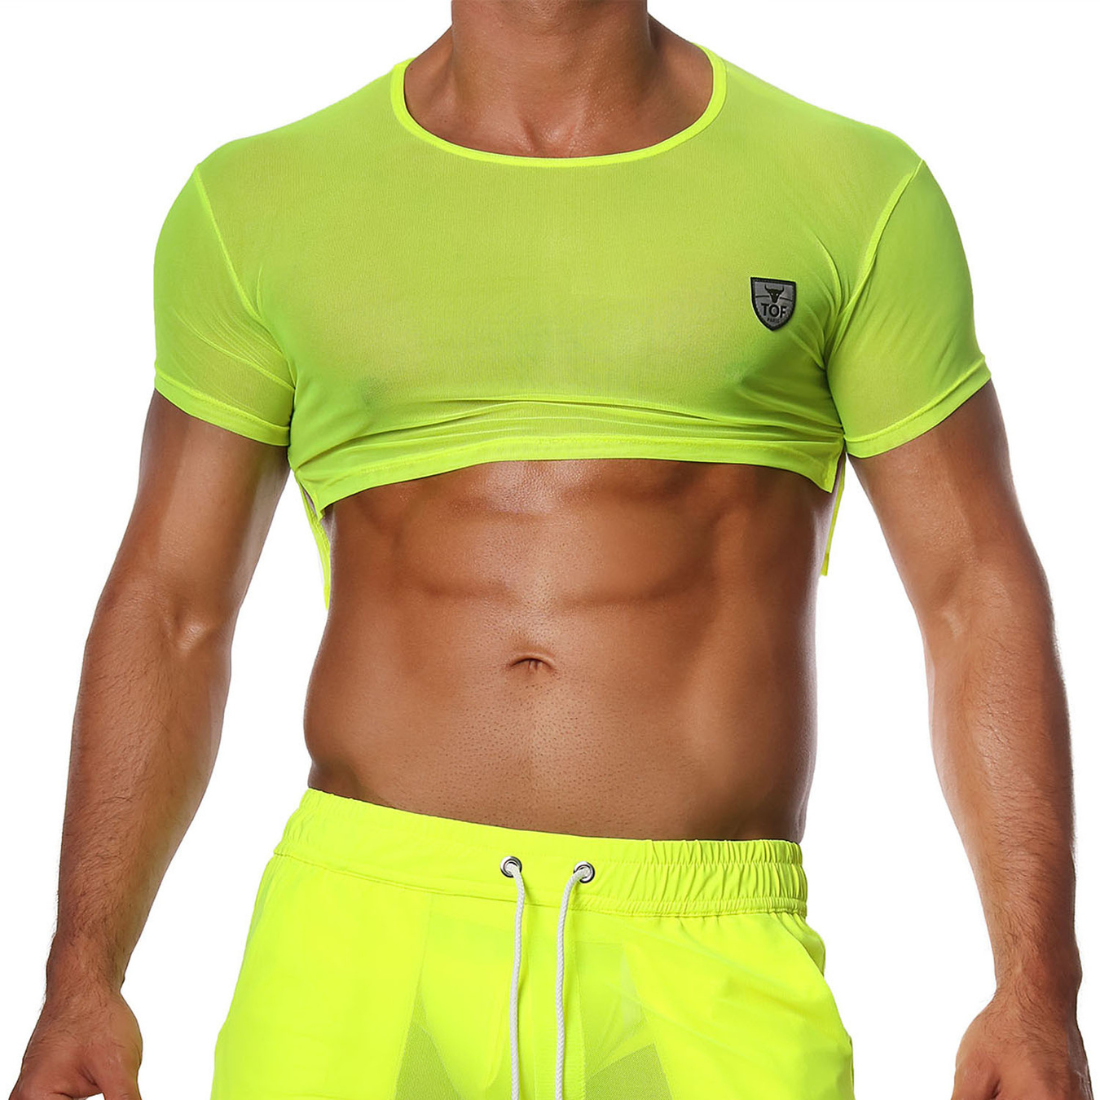 Sexy neon gele gay crop top, ontworpen door het Franse modehuis Tof Paris en te koop bij Flavourez.